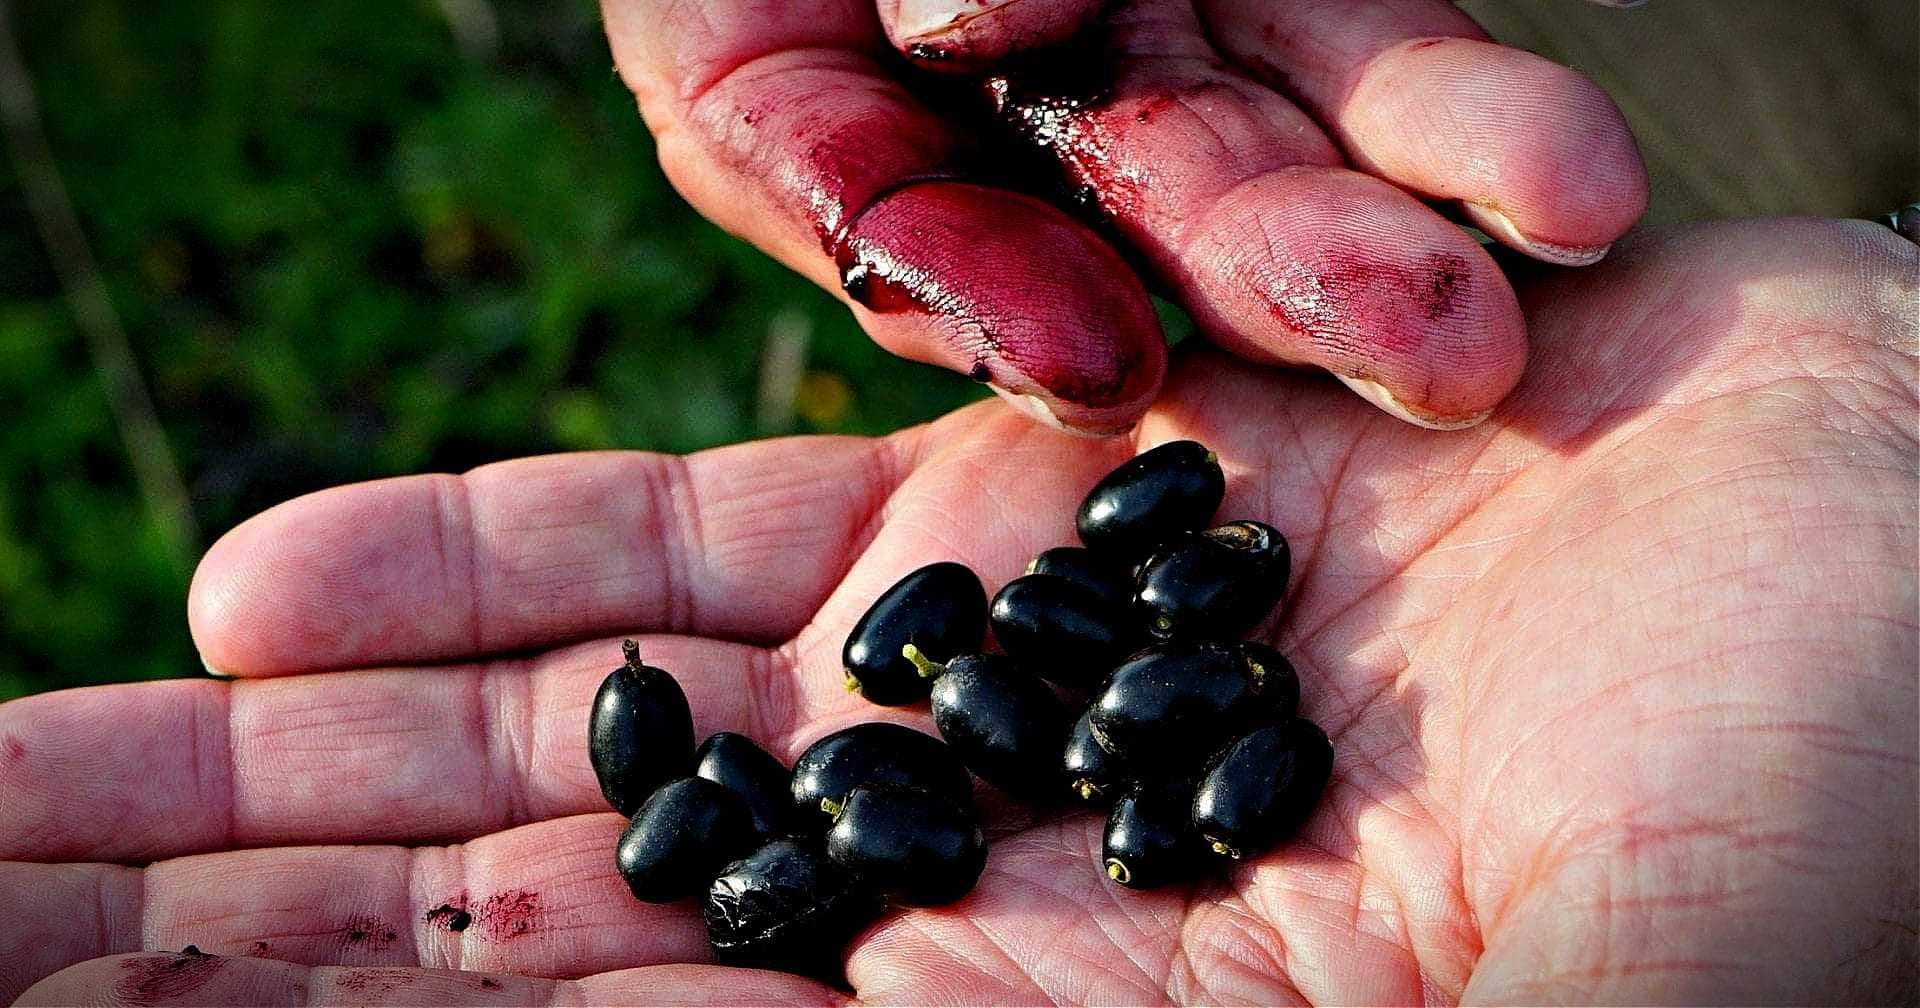 variétés-santé-nouvelles-huile-d'olives-sauvages-mieux-pour-abaisser-la-tension-arterielle-les-chercheurs-trouvent-l'huile-d'olive-temps